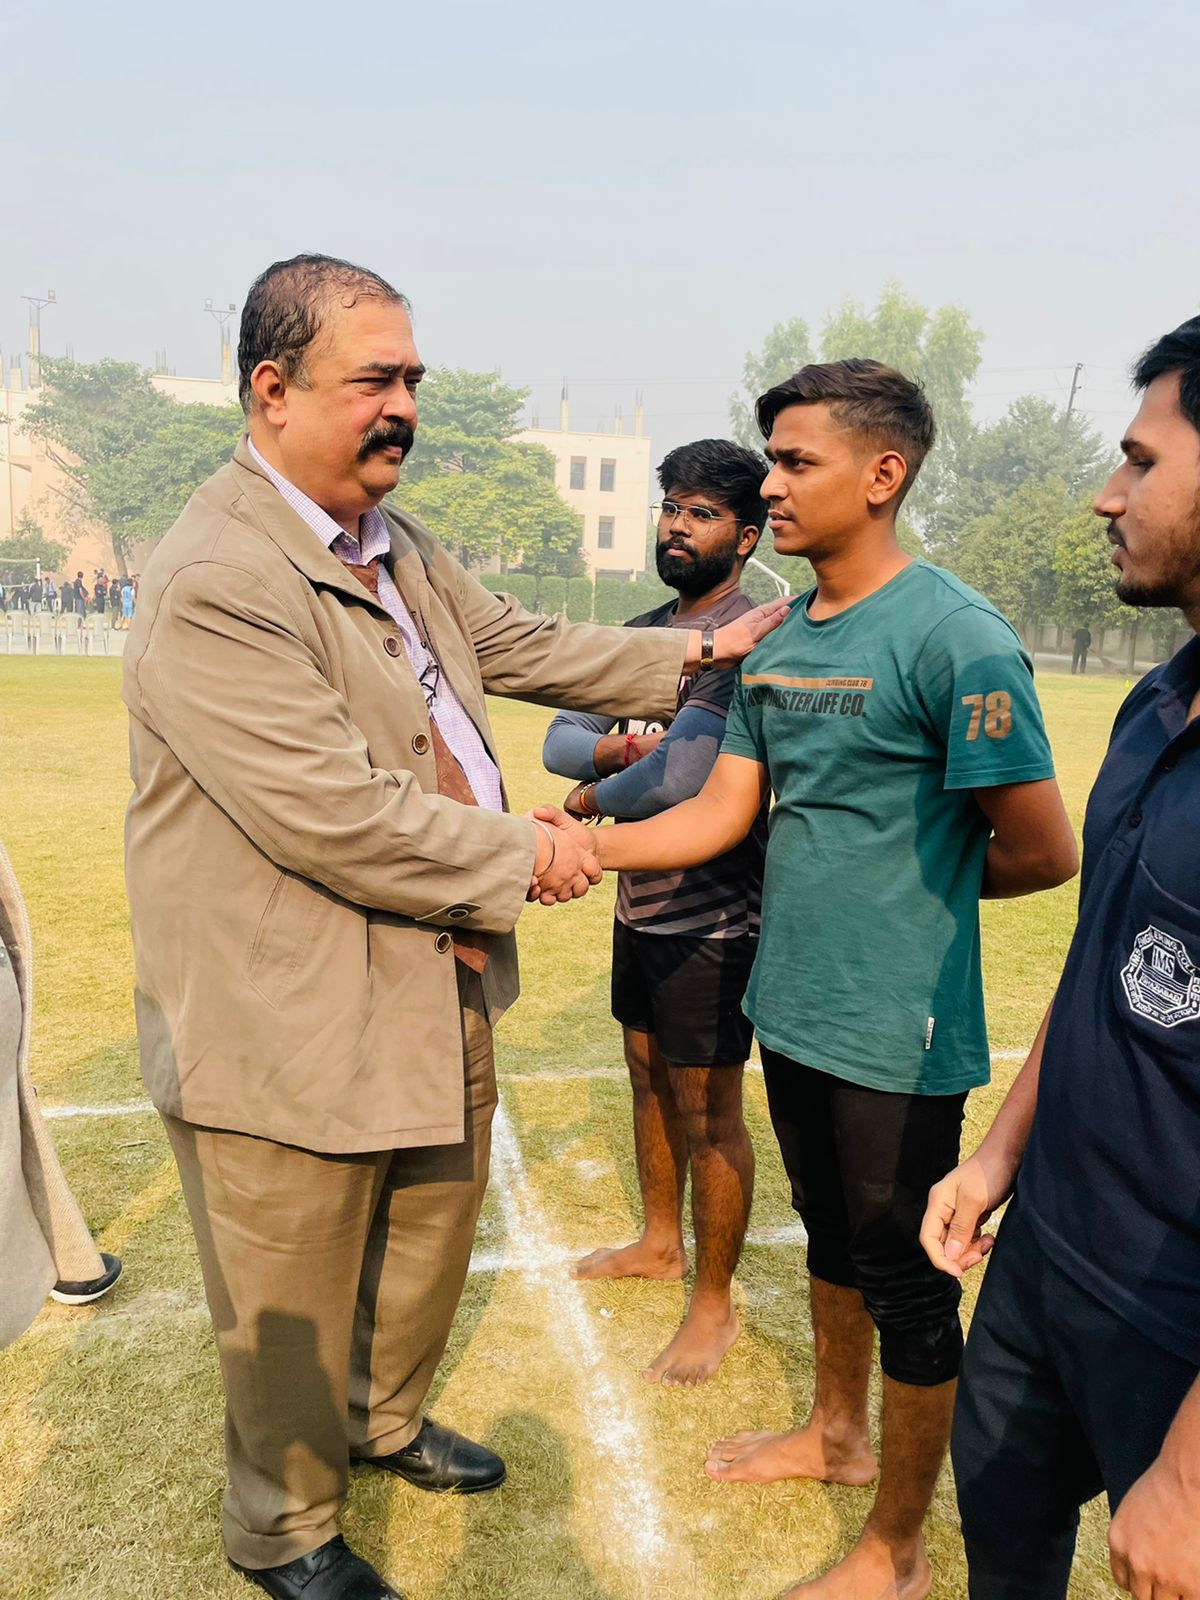 'Sangram-21',IMSEC organize Inter College Sports Fest.